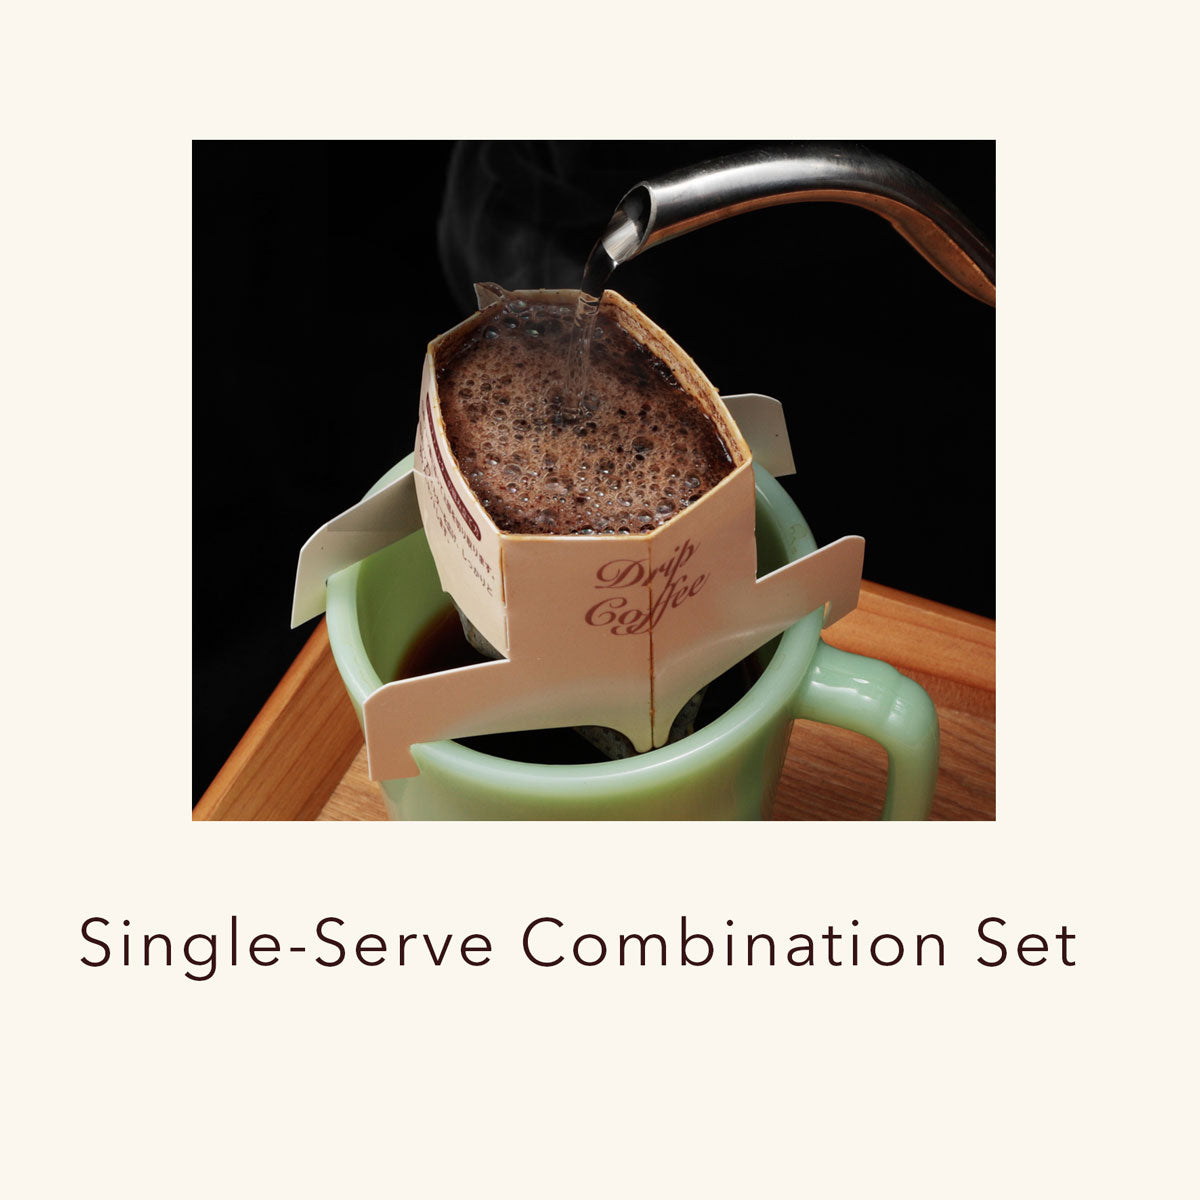 TAMAGOxORIGAMI Pour Over Coffee Kit - Premium Set Giftbox - Shop